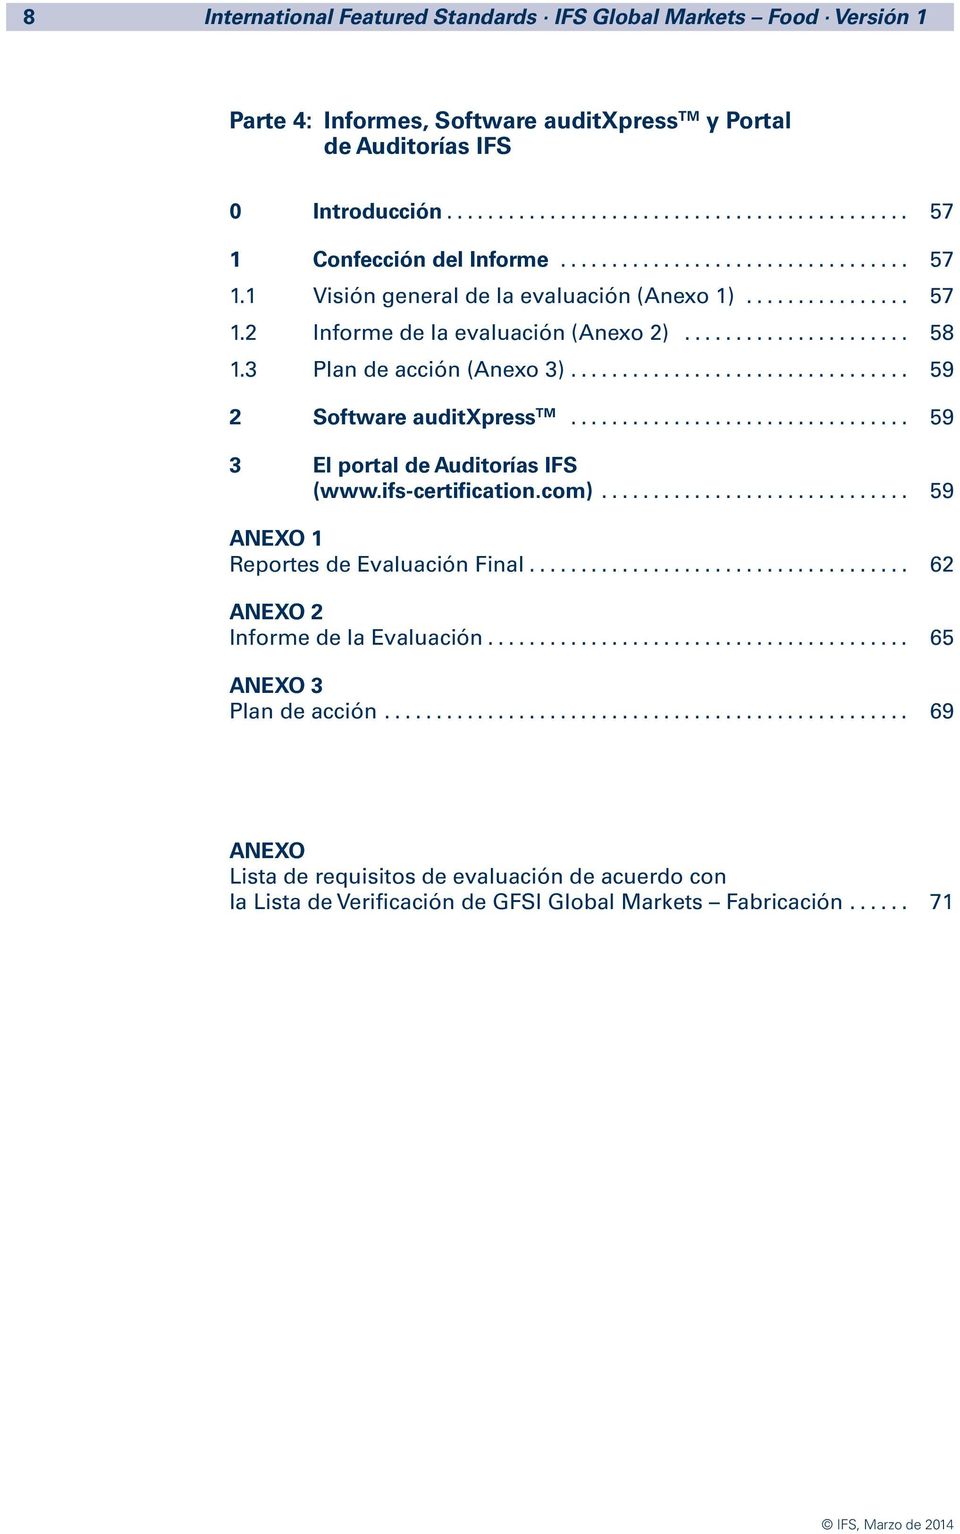 .. 59 2 Software auditxpress TM... 59 3 El portal de Auditorías IFS (www.ifs-certification.com)... 59 ANEXO 1 Reportes de Evaluación Final.